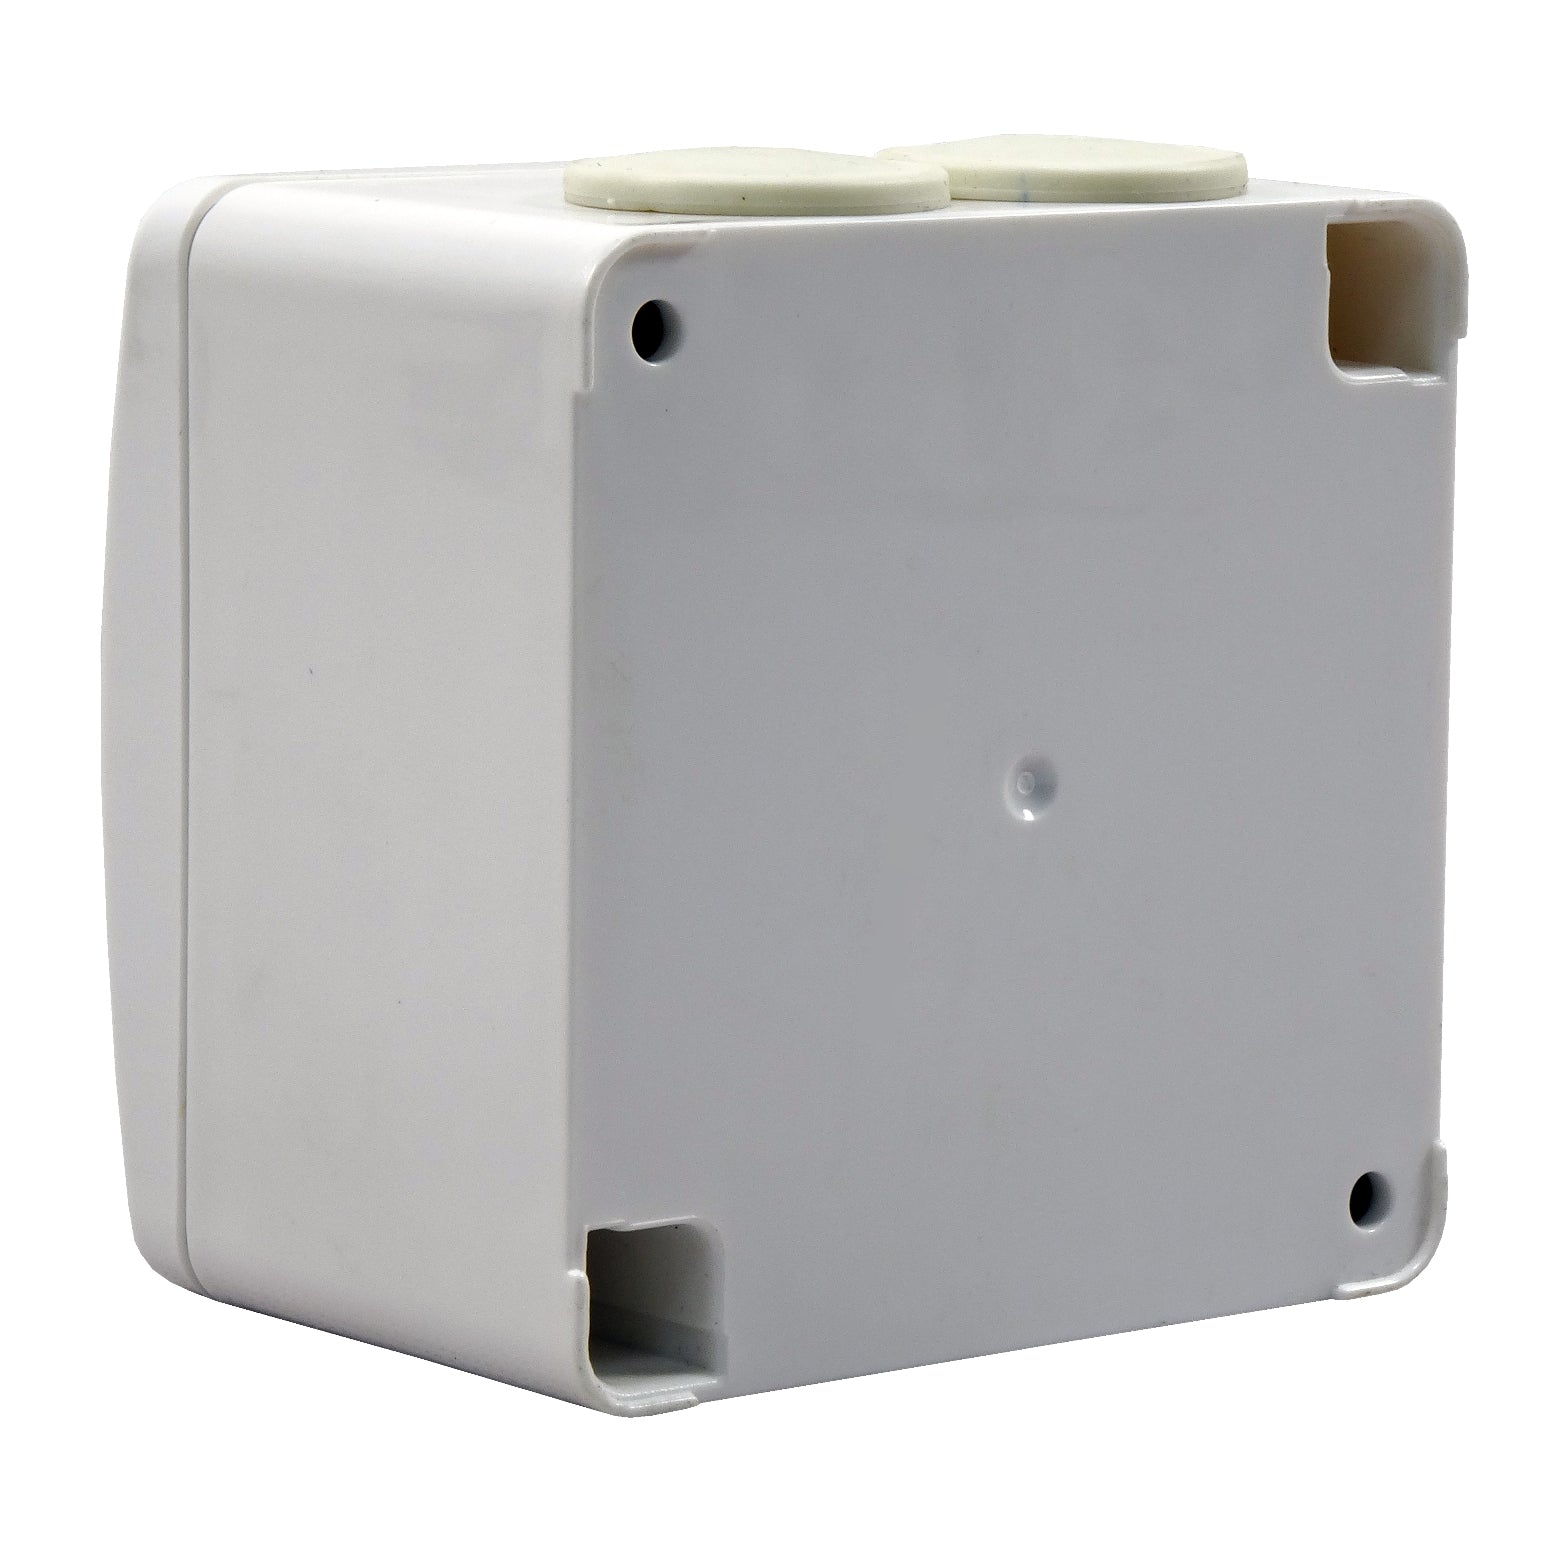 Drehzahlregler für Ventilatoren an Wand Dalap RR1 - 2,5